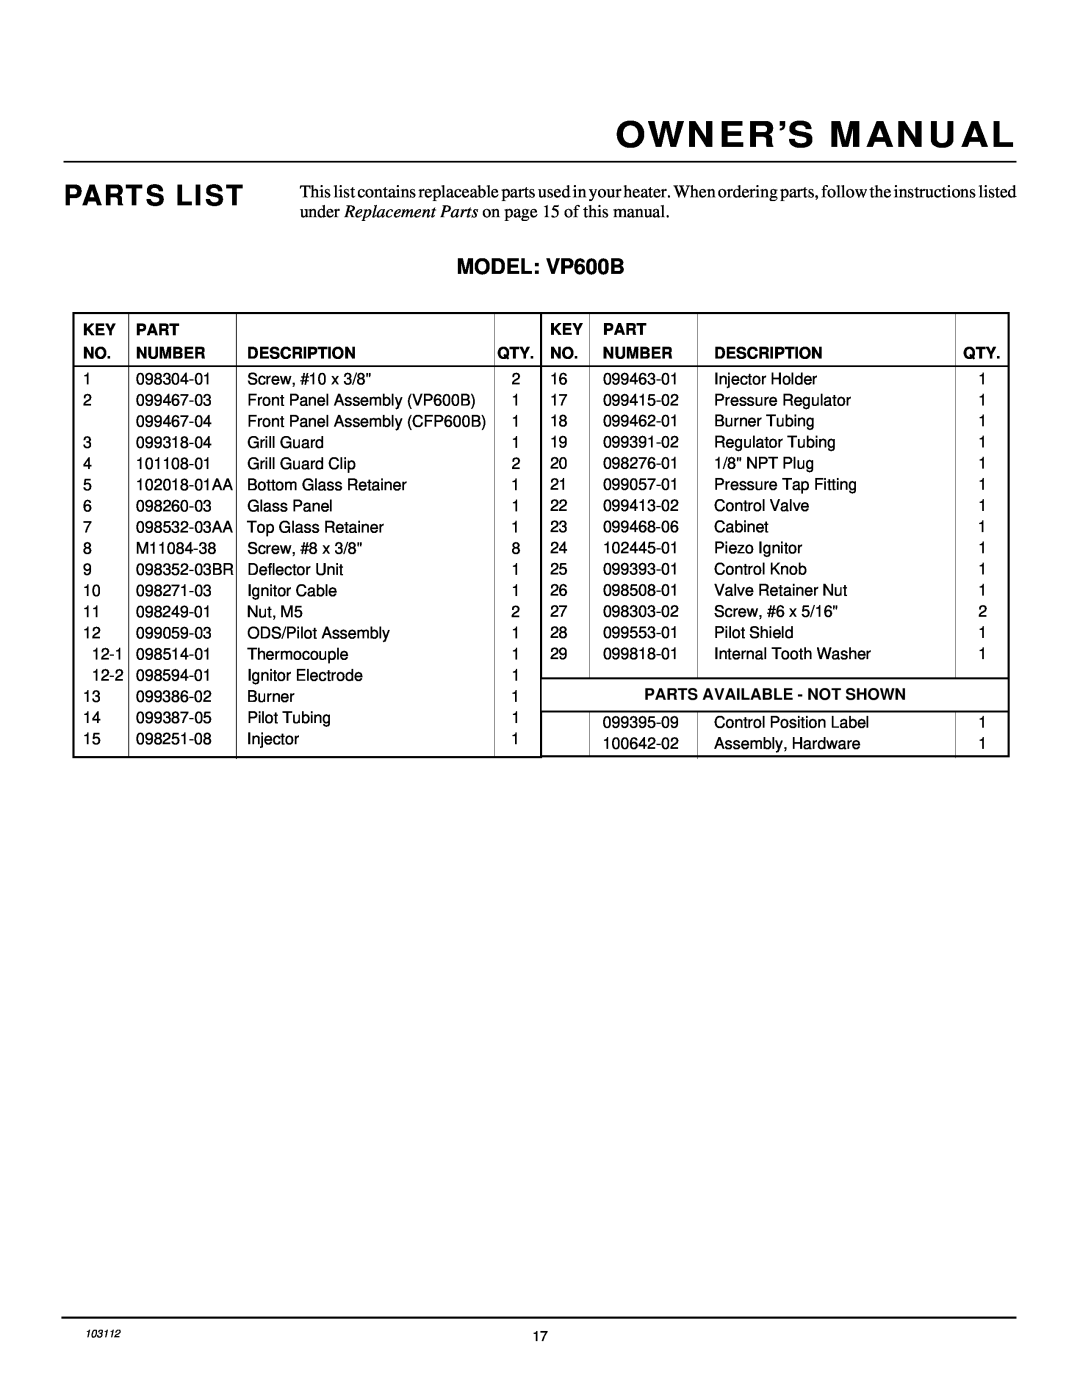 Desa 6000 BTU/HR Parts List, MODEL VP600B, Owner’S Manual, Number, Description, Parts Available - Not Shown 